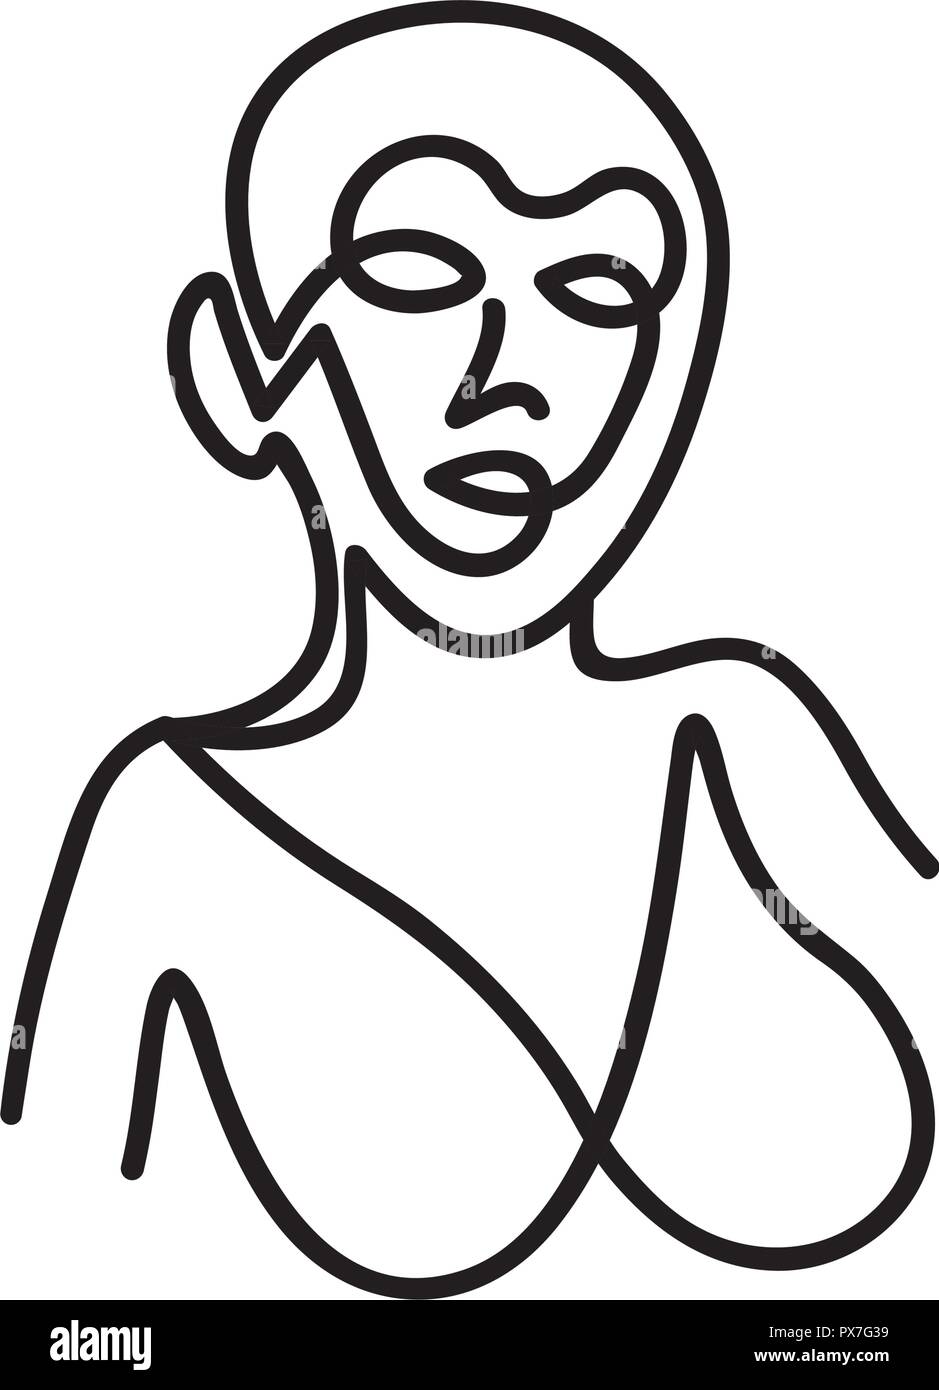 Venus de Milo inspiración trabajan en estilo de línea única Ilustración del Vector